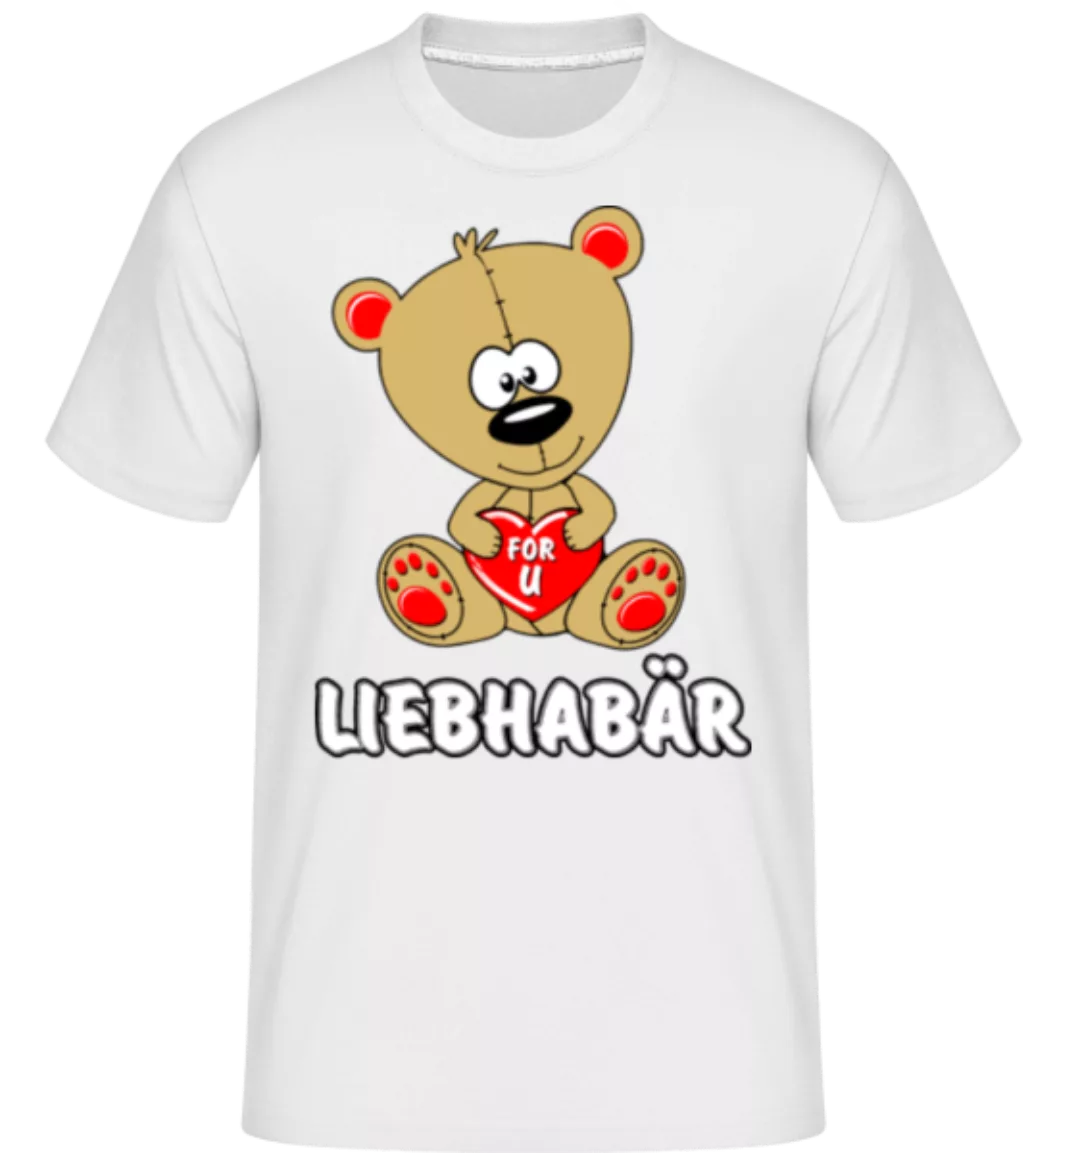 Liebhabär · Shirtinator Männer T-Shirt günstig online kaufen